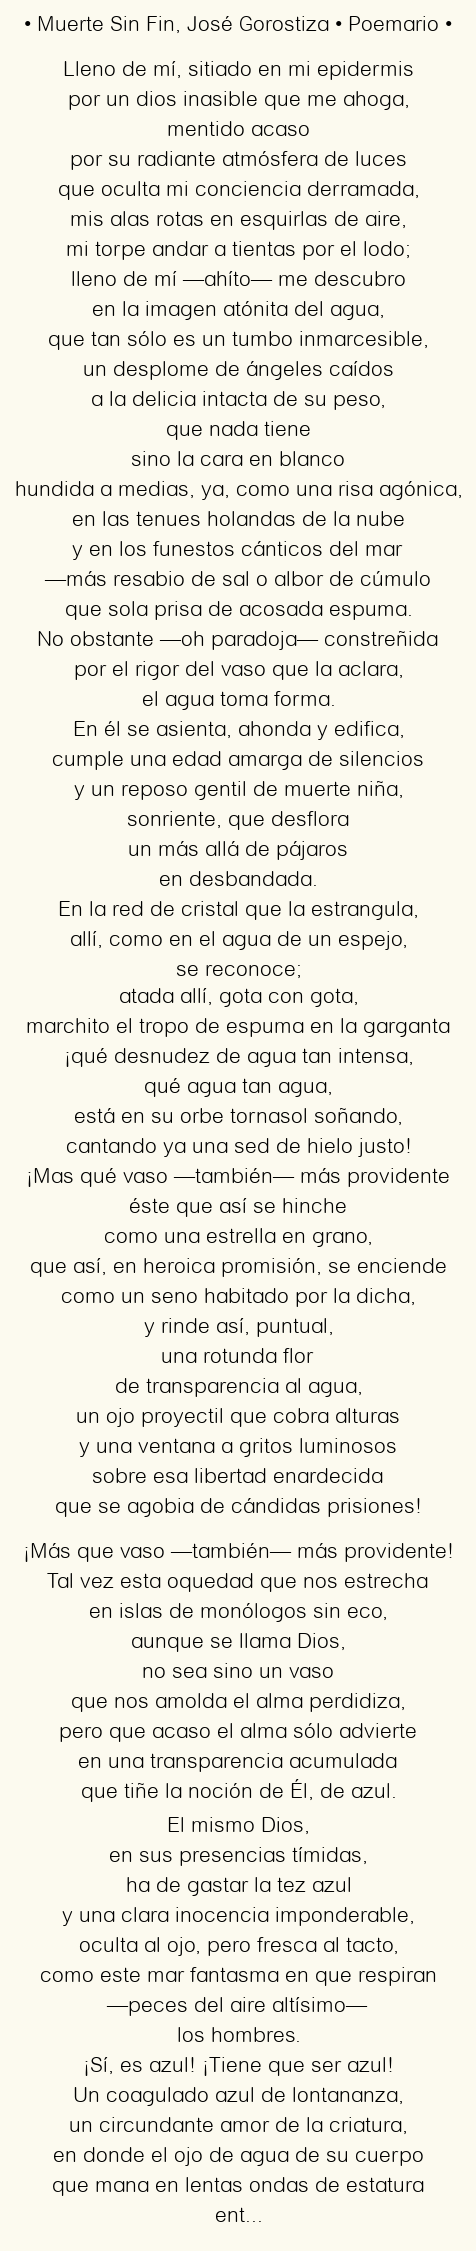 Imagen con el poema Muerte Sin Fin, por José Gorostiza